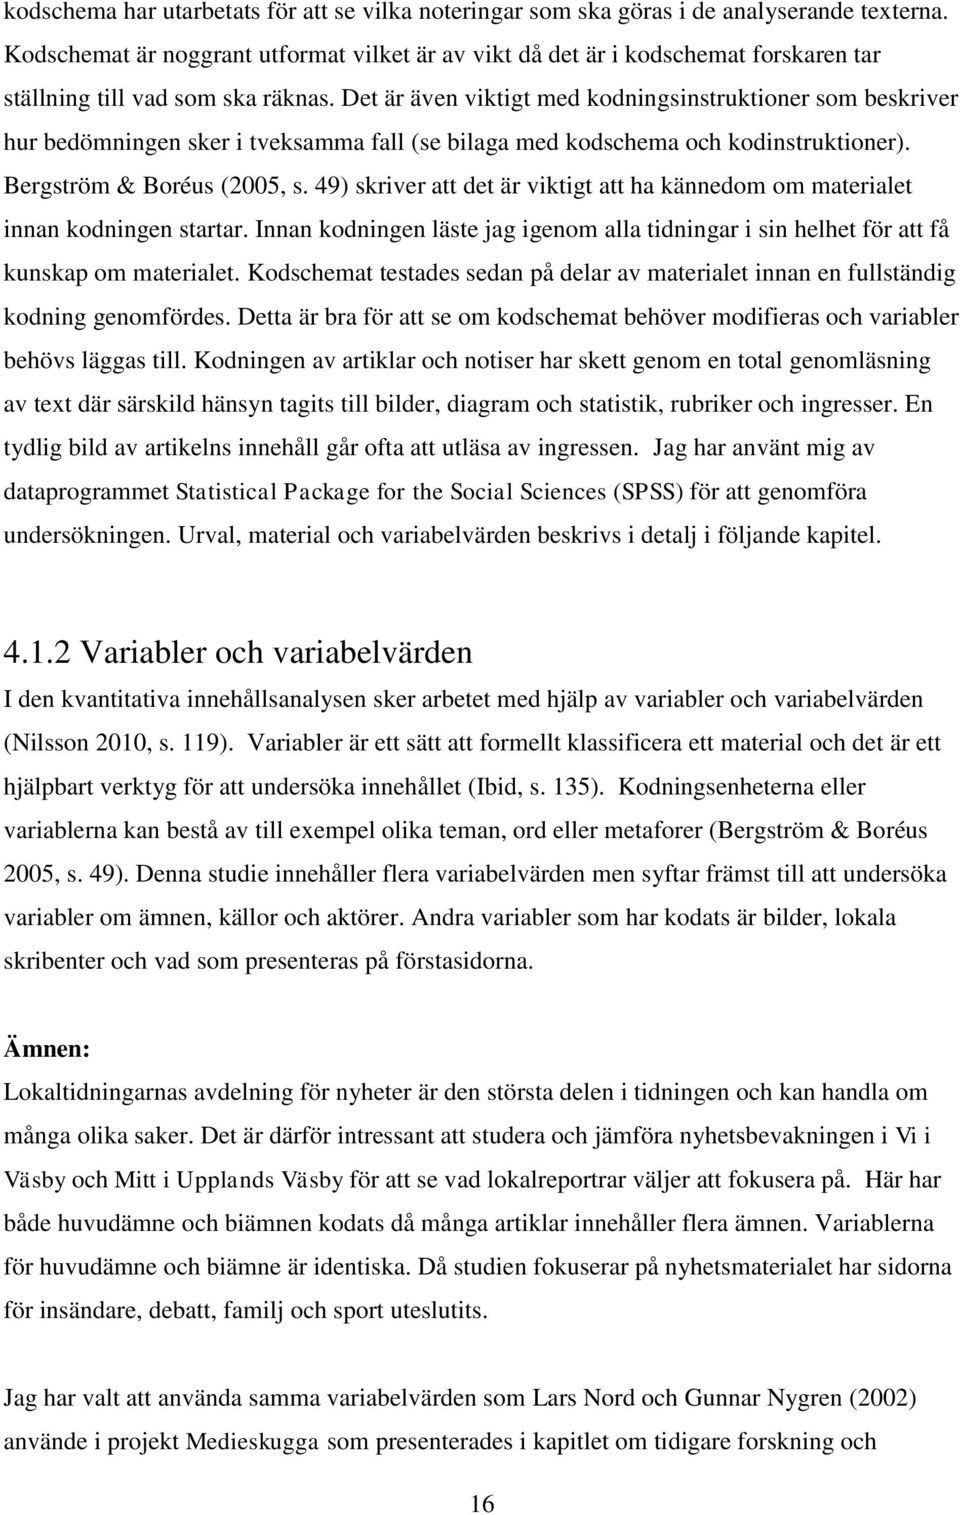 Det är även viktigt med kodningsinstruktioner som beskriver hur bedömningen sker i tveksamma fall (se bilaga med kodschema och kodinstruktioner). Bergström & Boréus (2005, s.